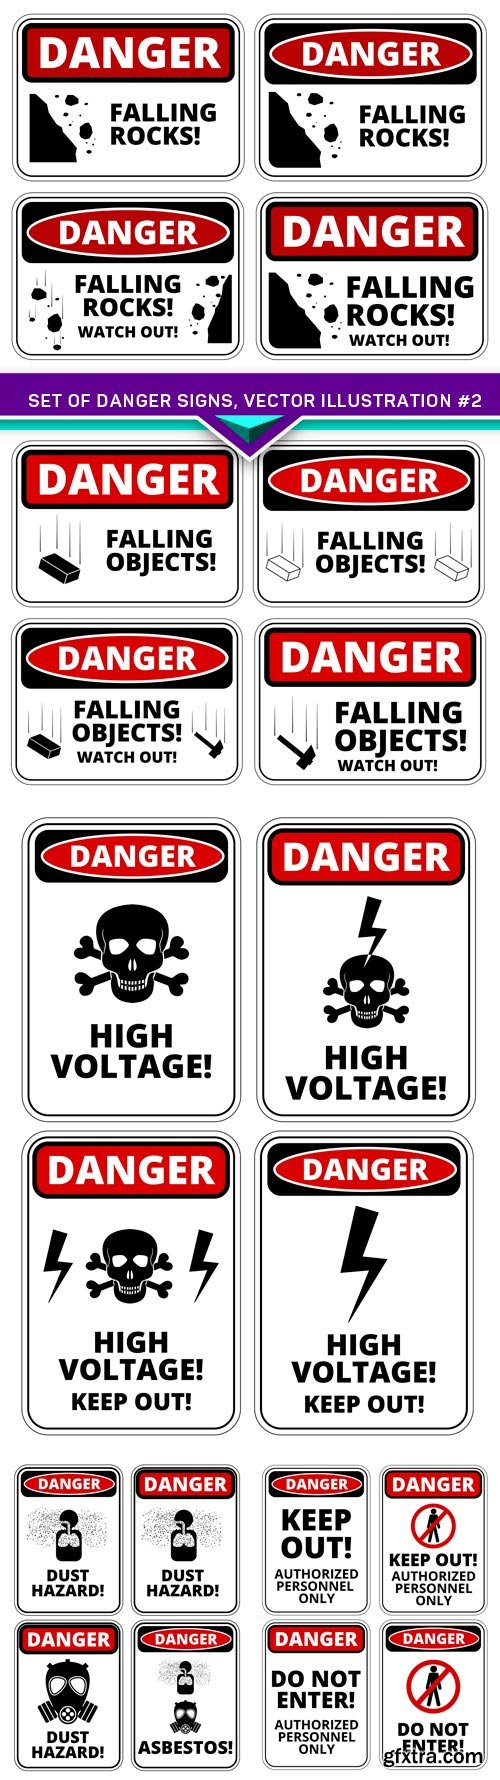 Set of danger signs, vector illustration #2 5X EPS